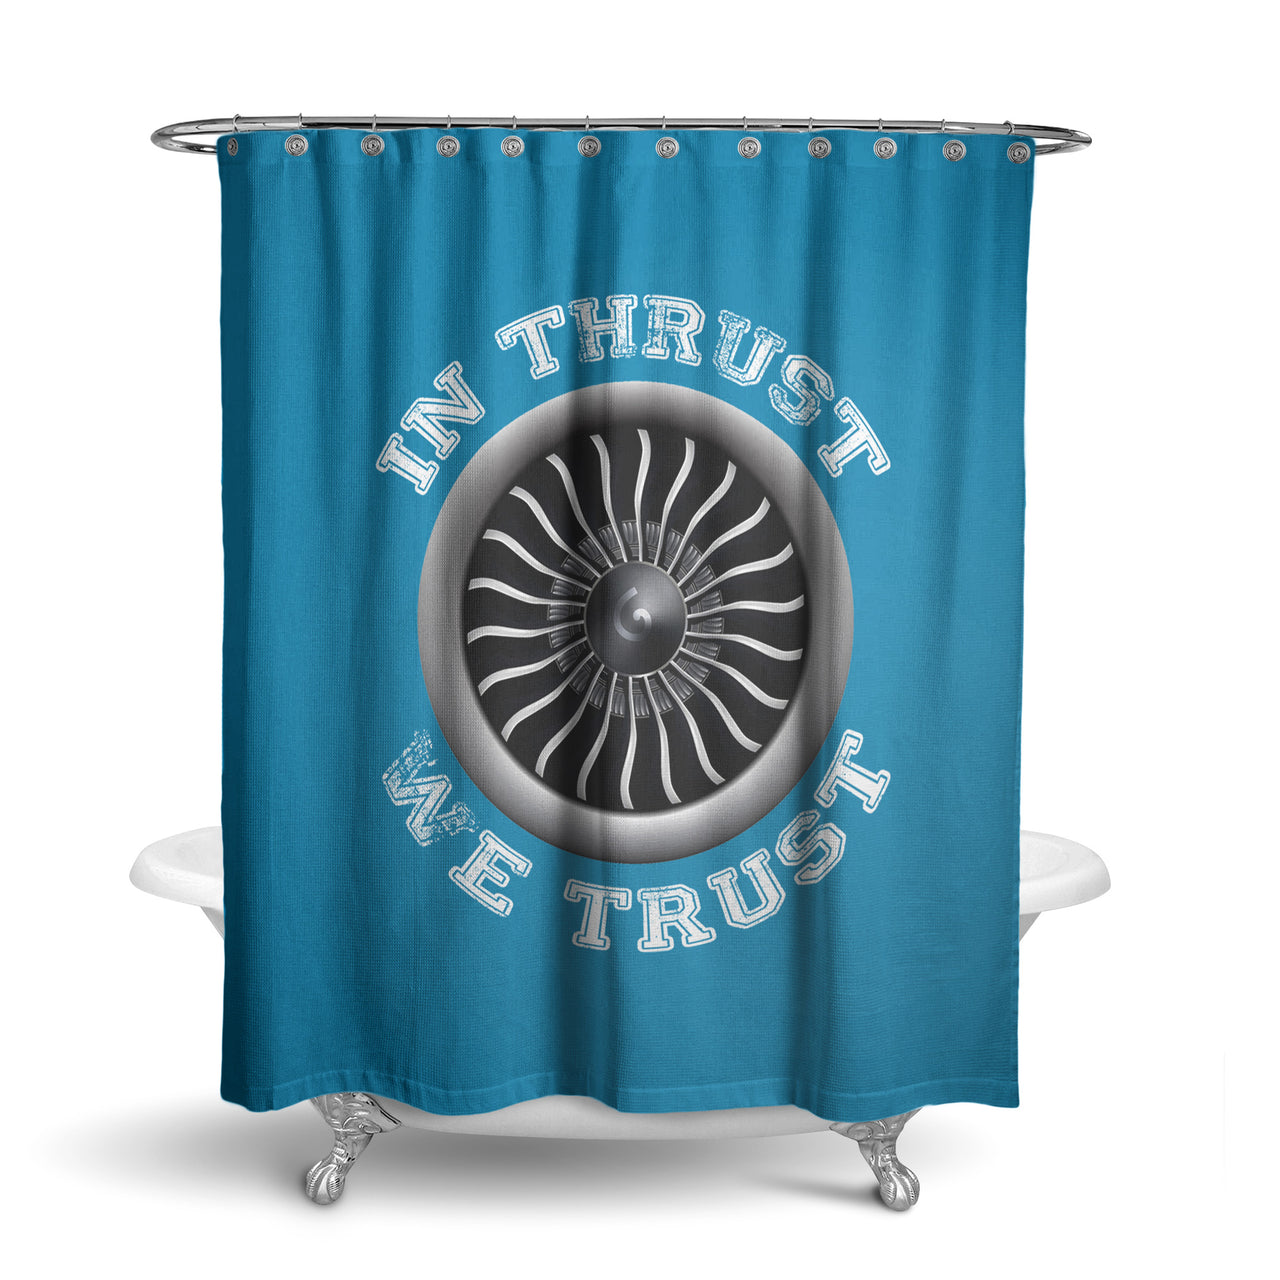 In Thrust We Trust (Vol 2) Designed Shower Curtains